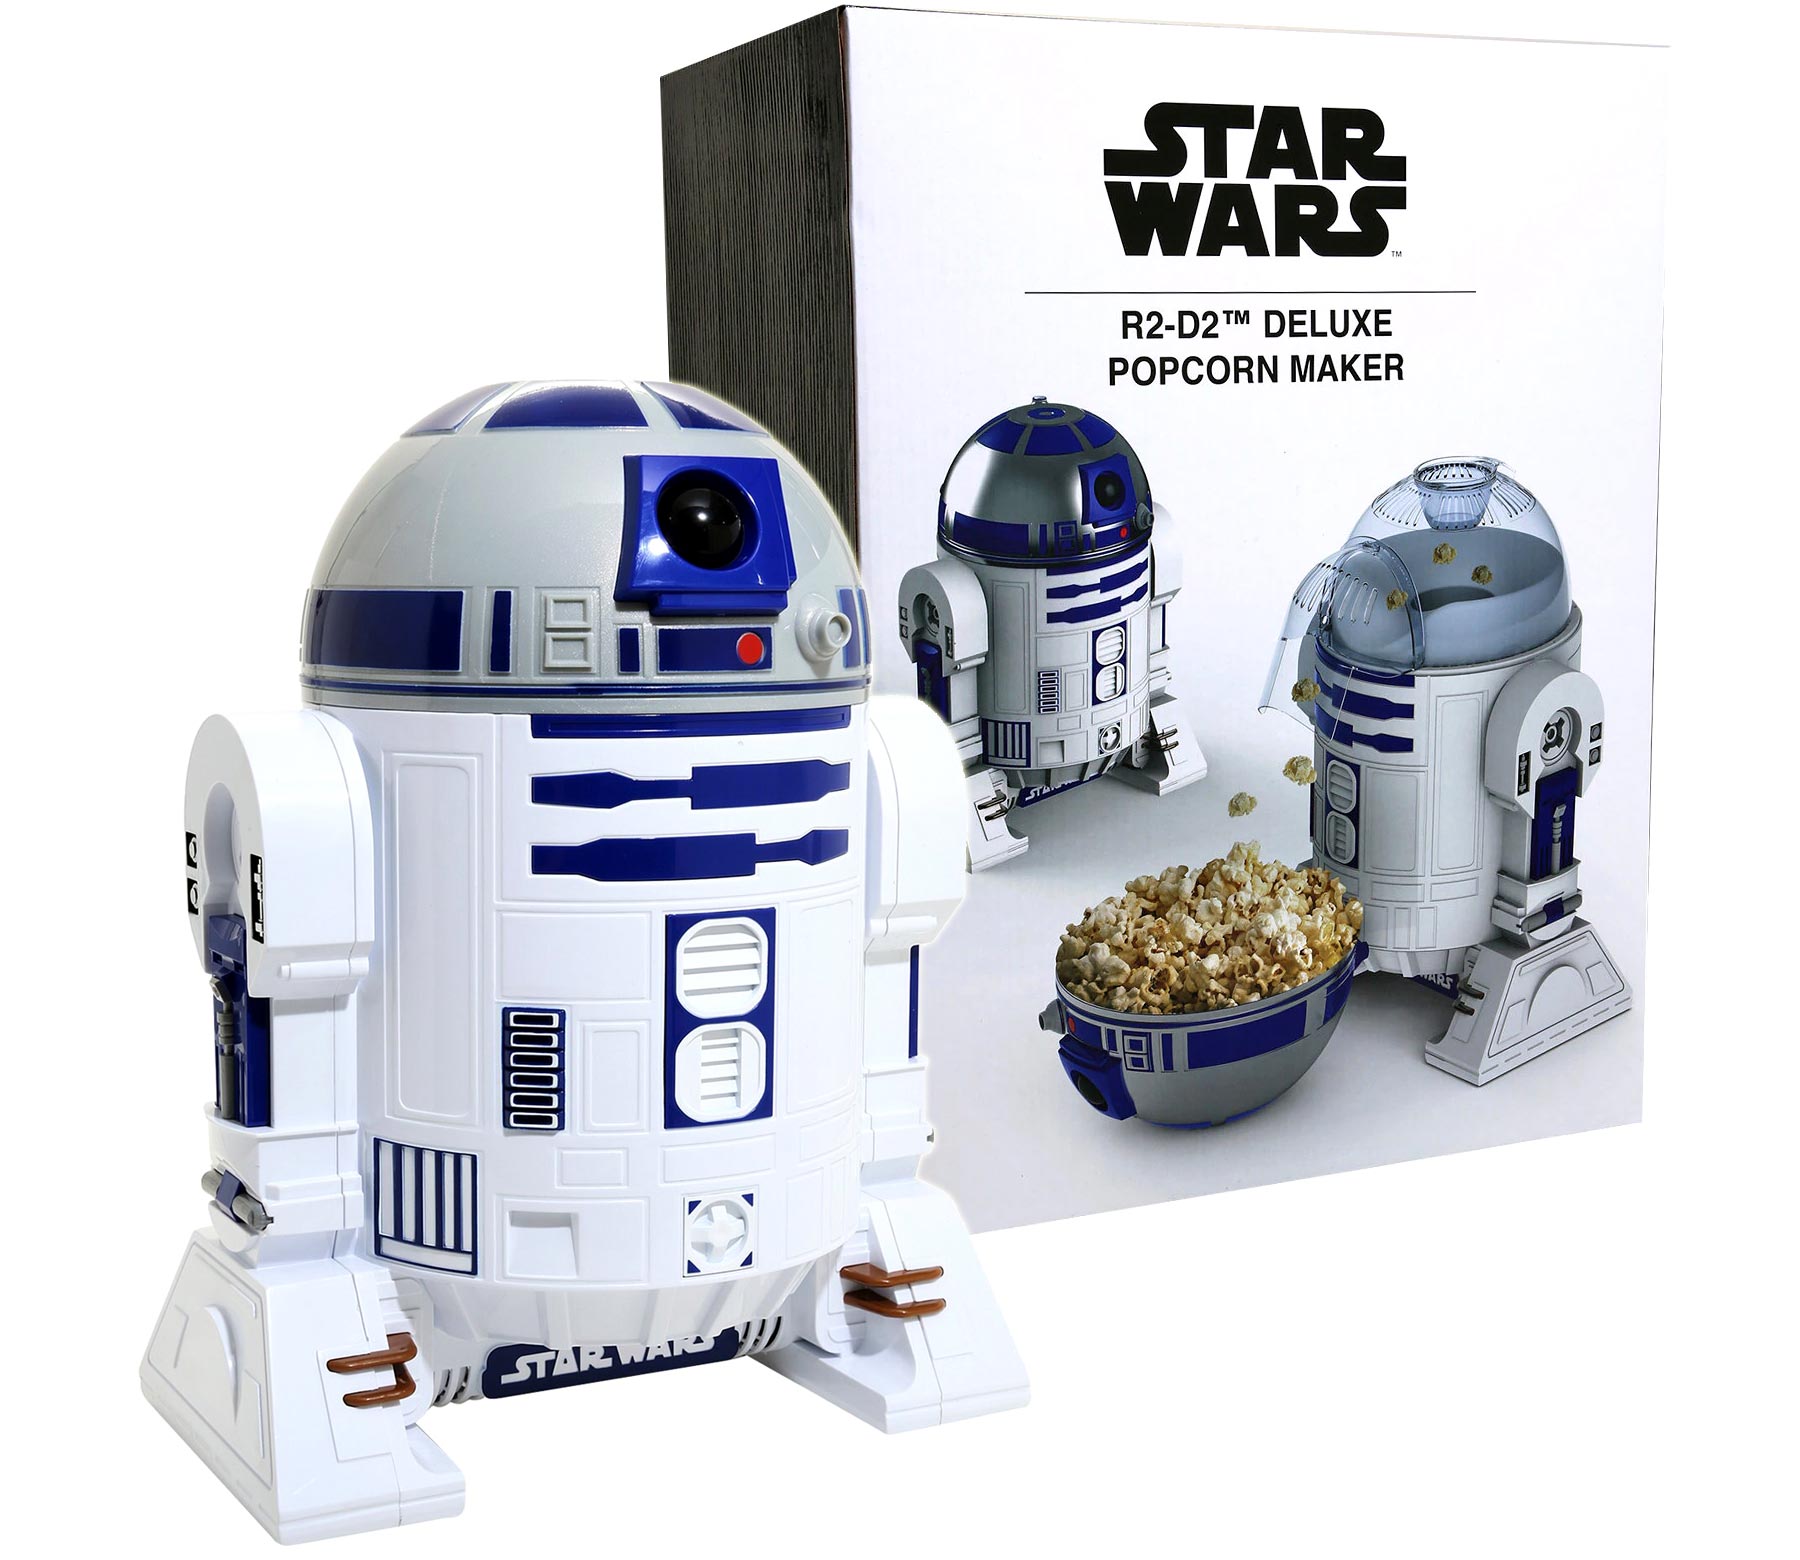 https://www.geekalerts.com/u/R2-D2-Star-Wars-Deluxe-Popcorn-Maker.jpg